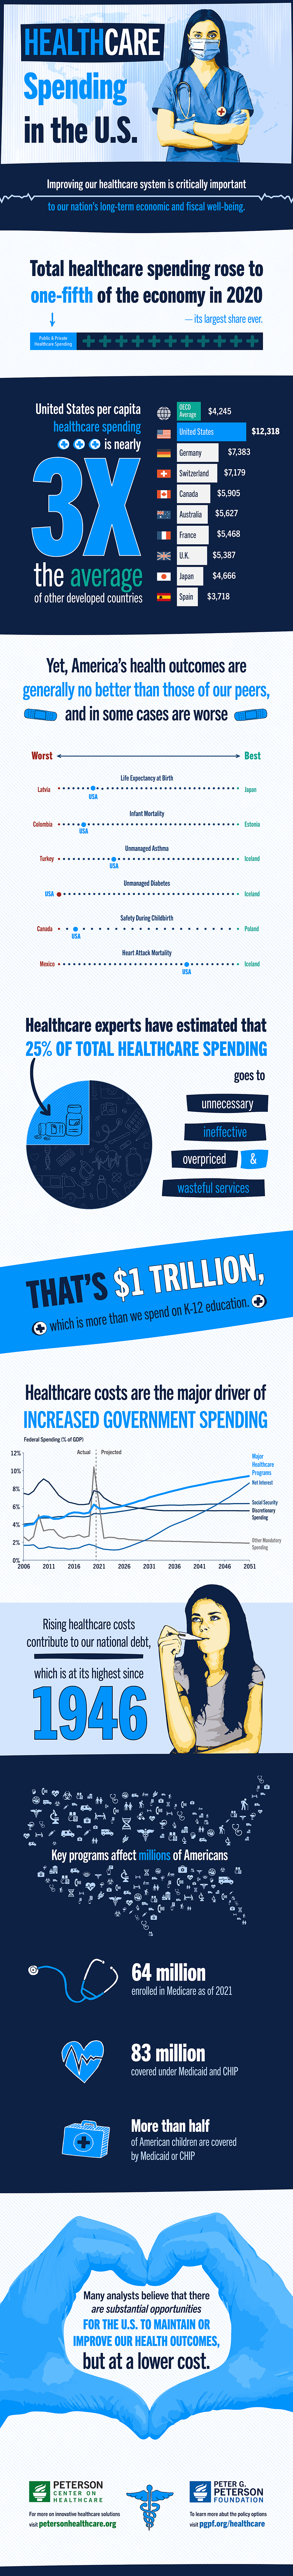 Healthcare Spending in the U.S.